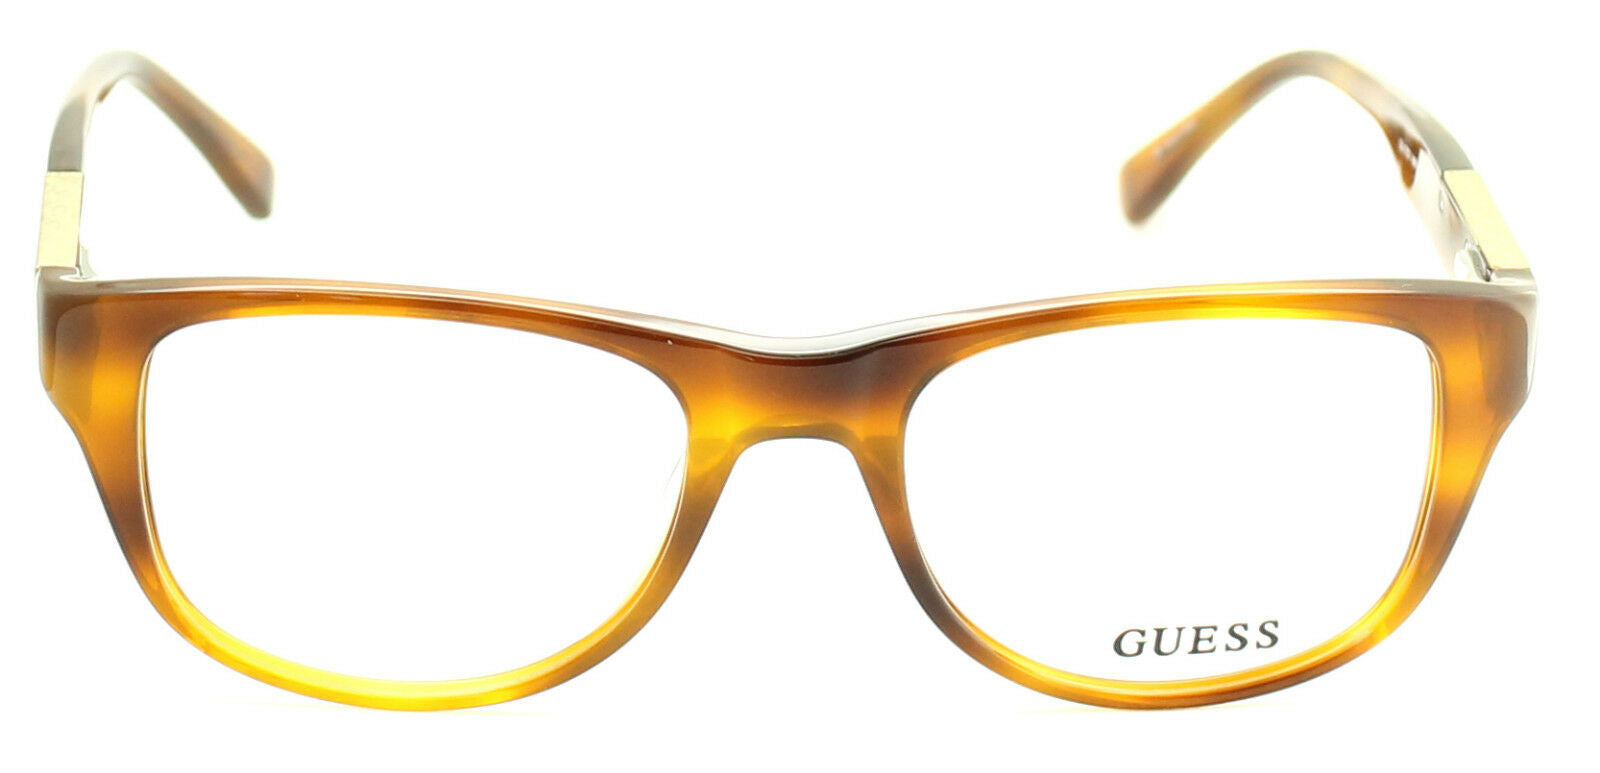 GUESS GU1737 HNY Eyewear FRAMES NEW Eyeglasses RX Optical BNIB New - TRUSTED